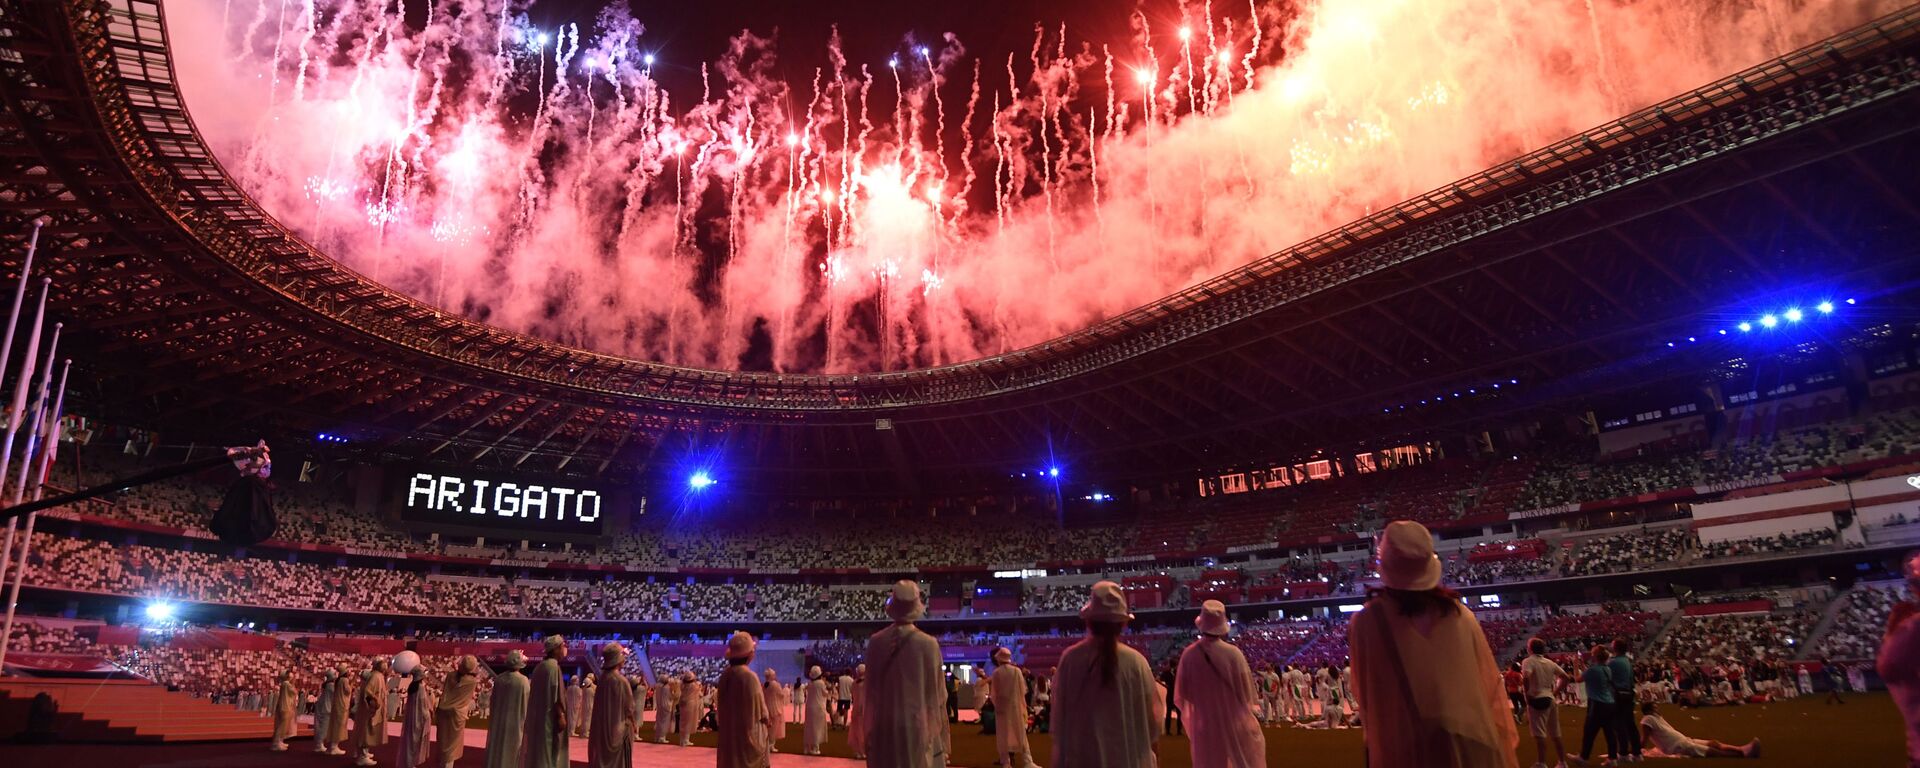 Салют на торжественной церемонии закрытия XXXII летних Олимпийских игр в Токио на Национальном олимпийском стадионе  - Sputnik Латвия, 1920, 08.08.2021